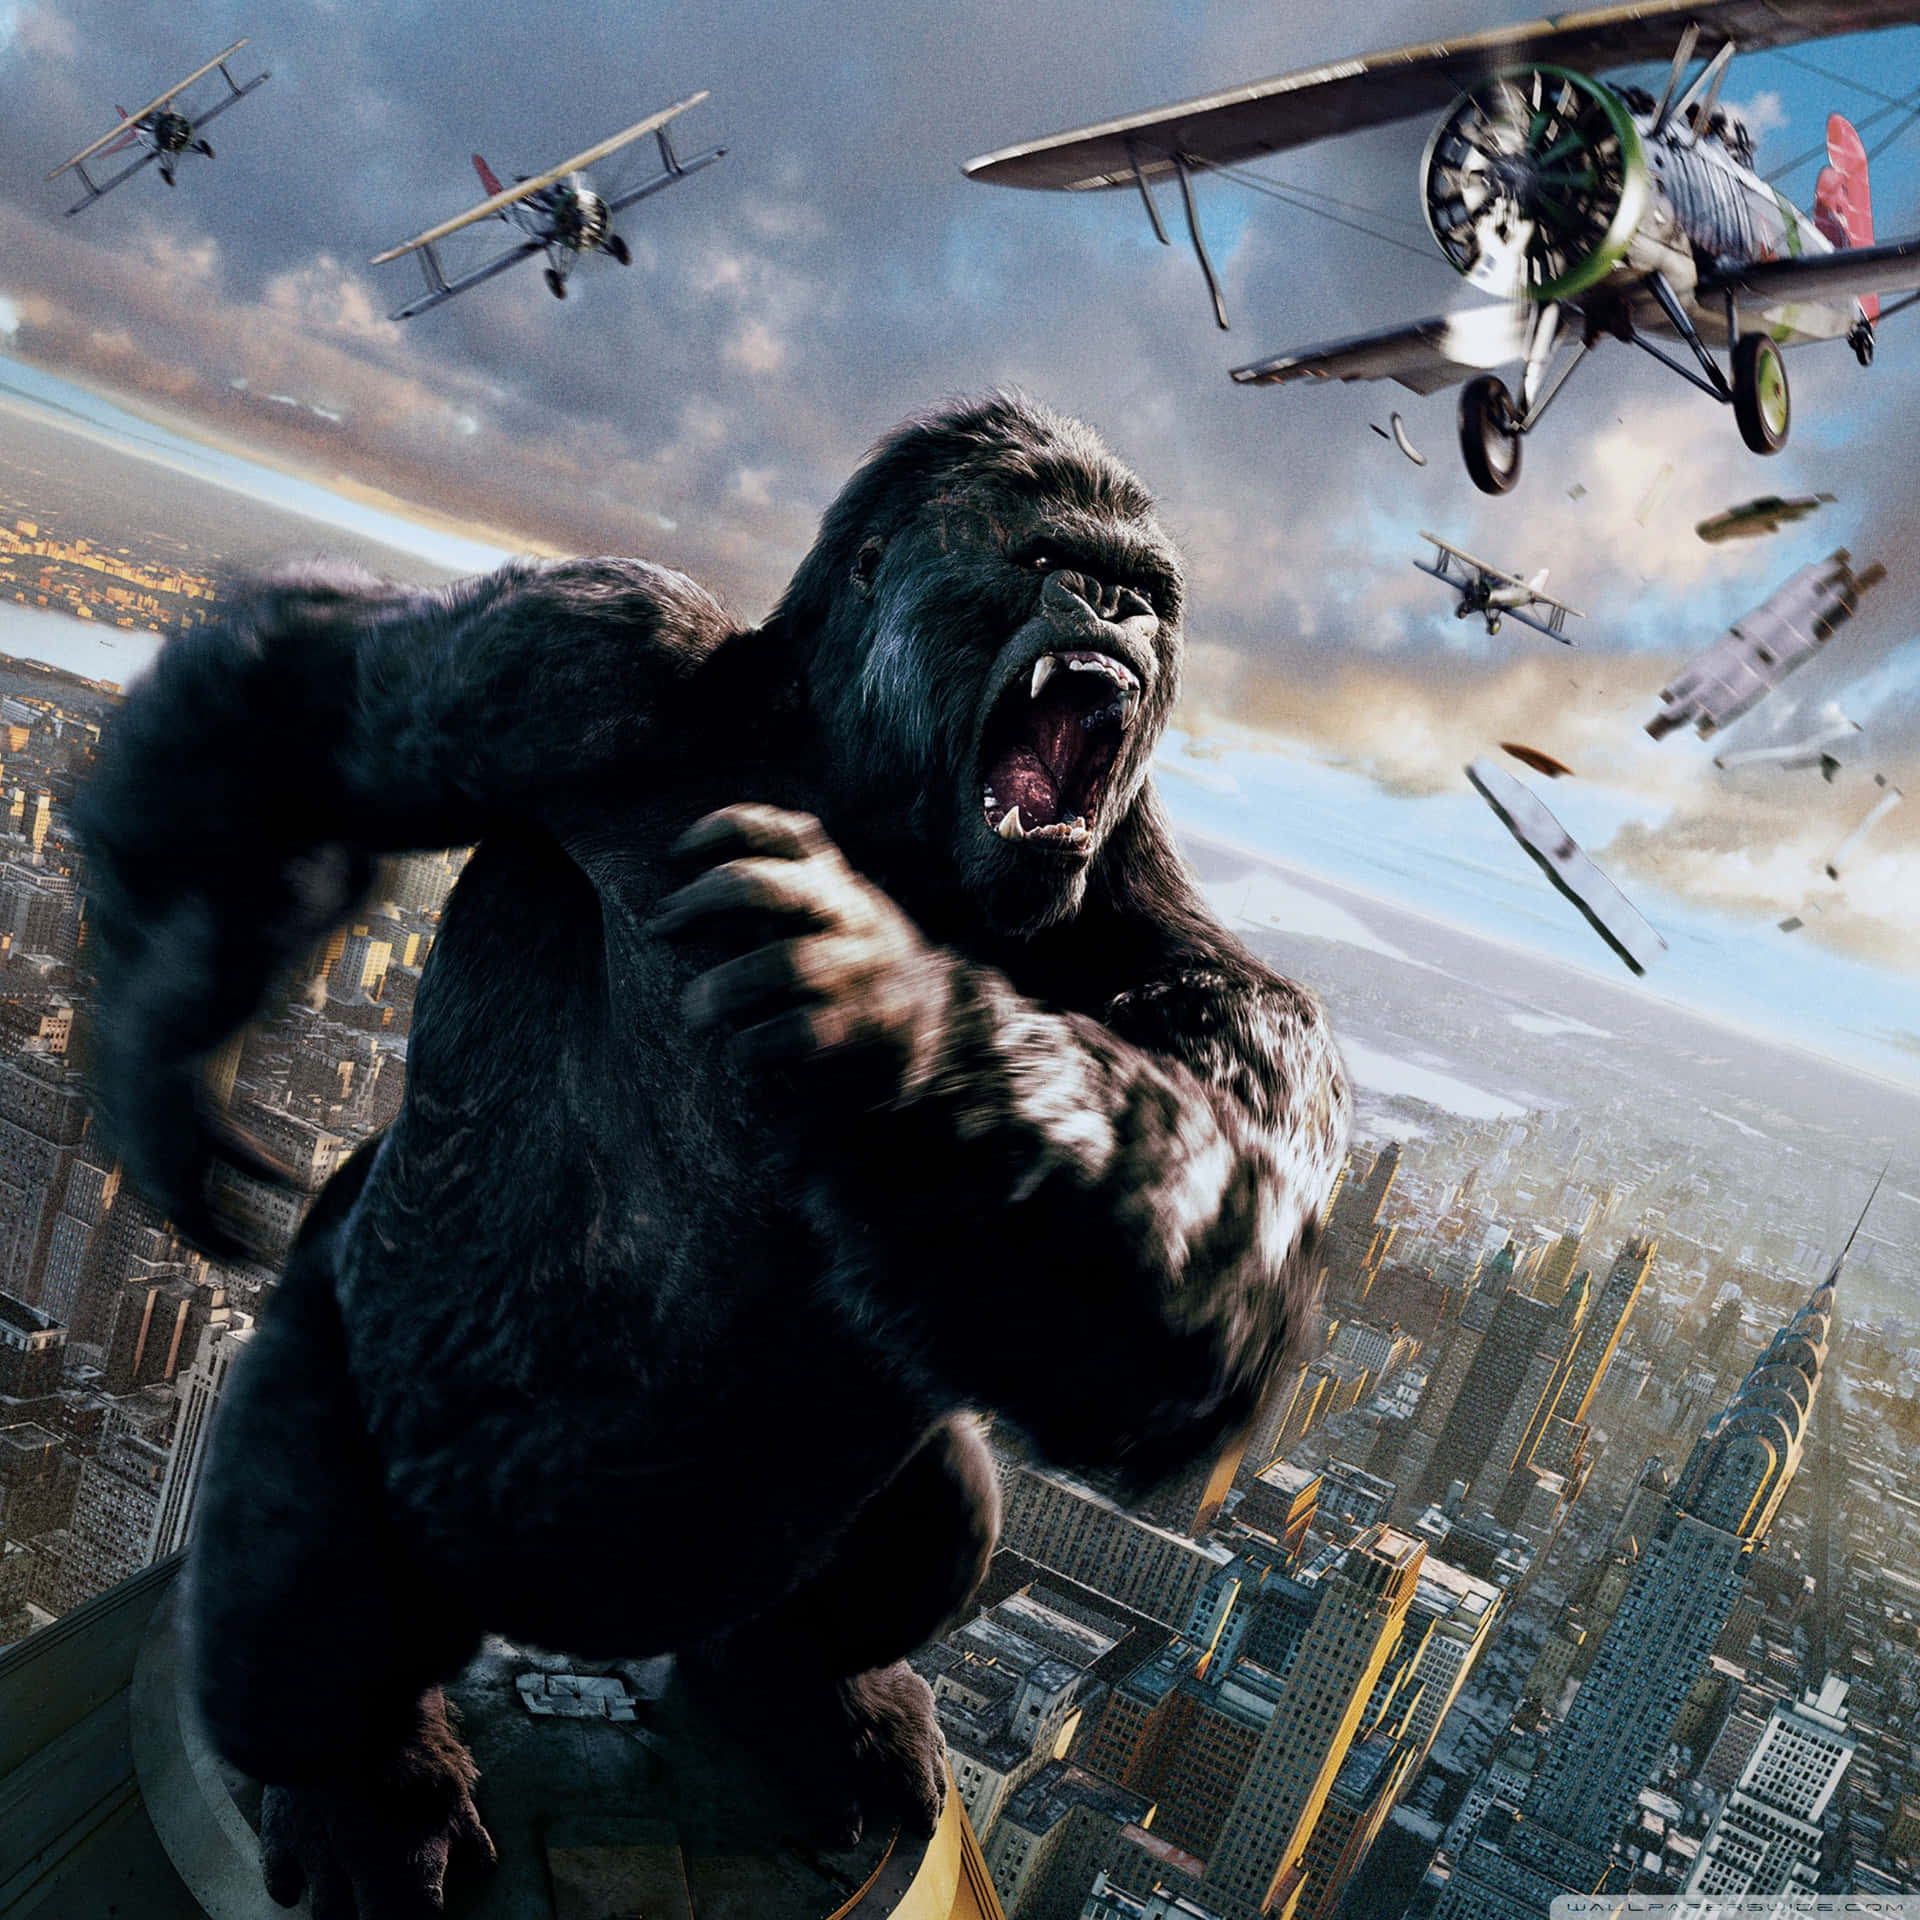 Tauchensie Ein In Die Action Von King Kong In 4k Ein. Wallpaper